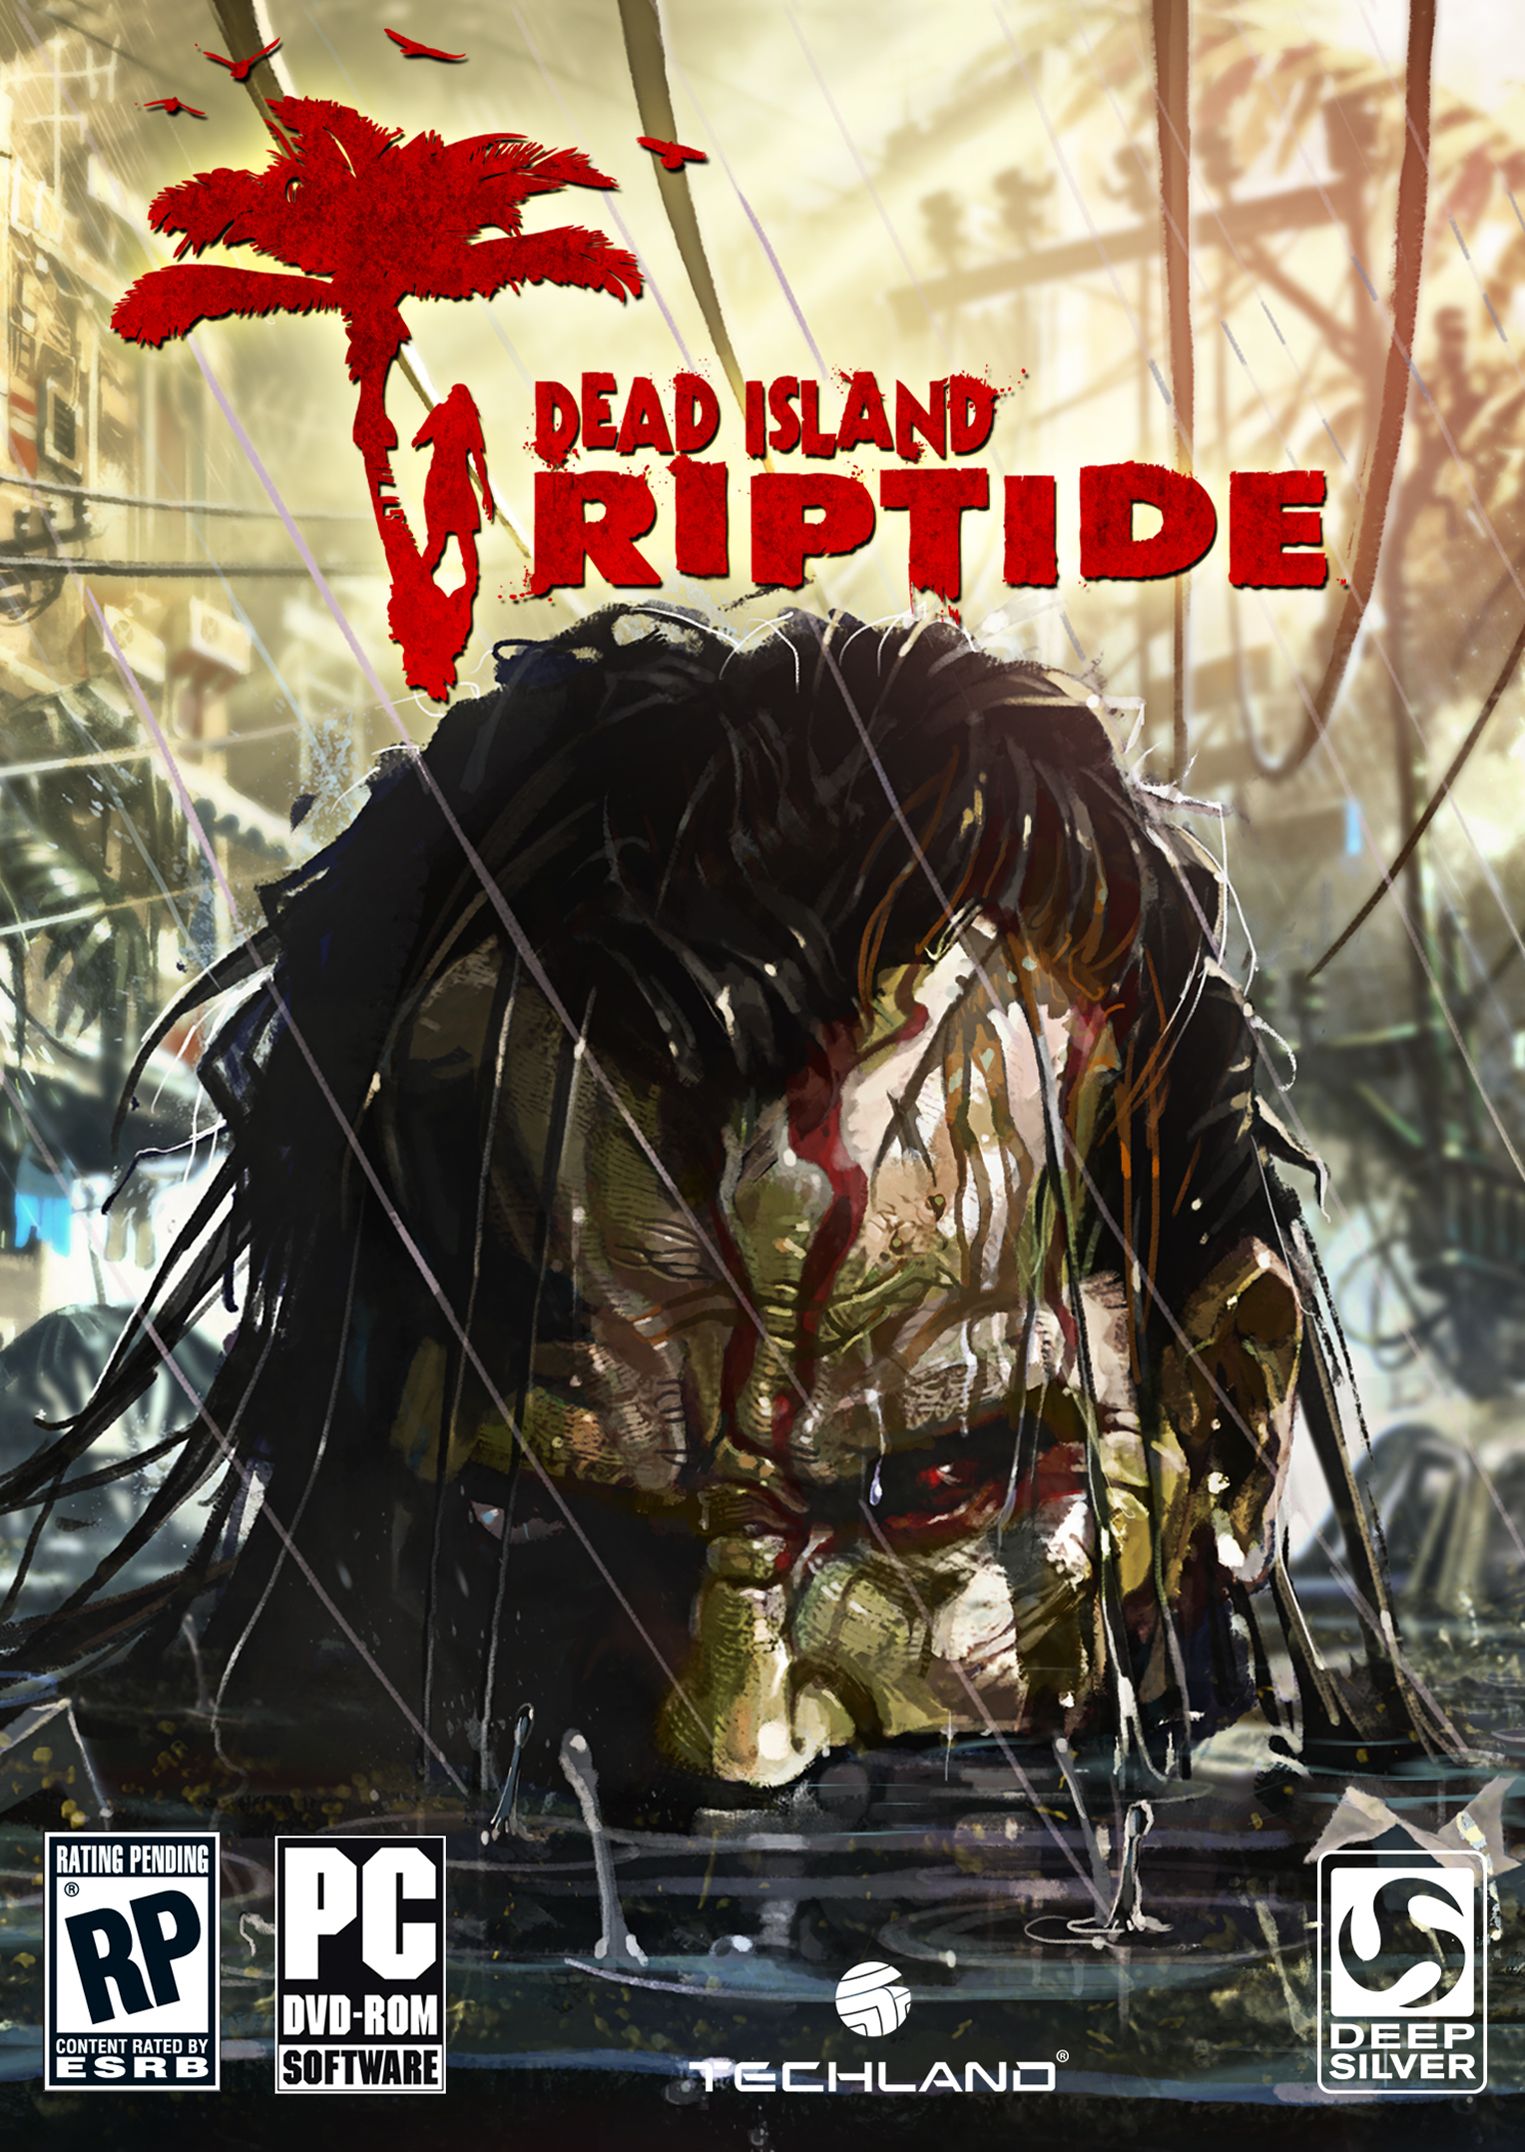 Полный русификатор озвучки(звука) для Dead Island Riptide